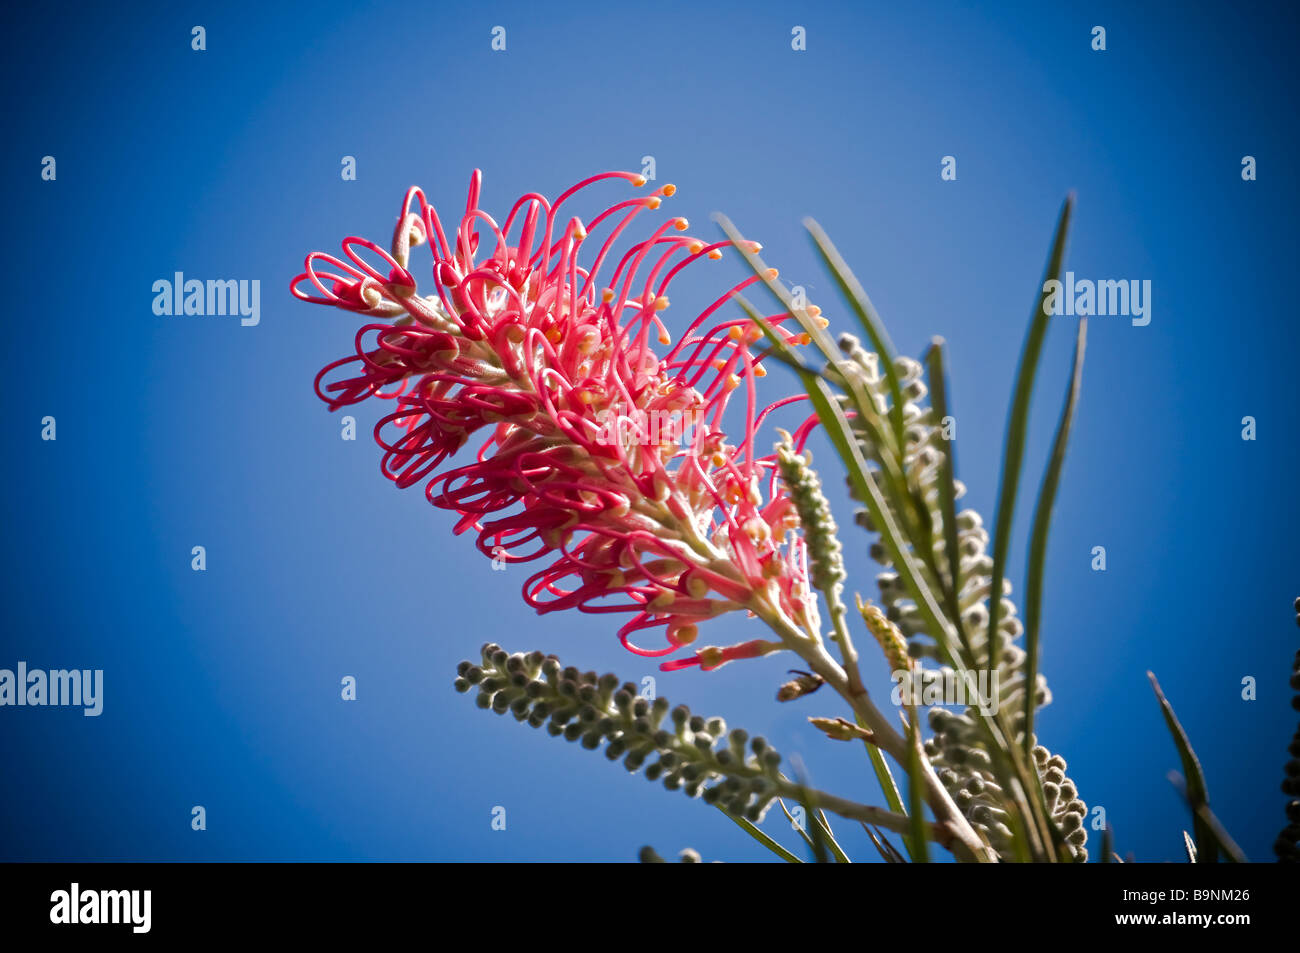 La flore australienne typique un Red Grevillea Banksii famille Proteaceaein Automne à Balmain a également appelé à Hawaii Kahili flower Banque D'Images